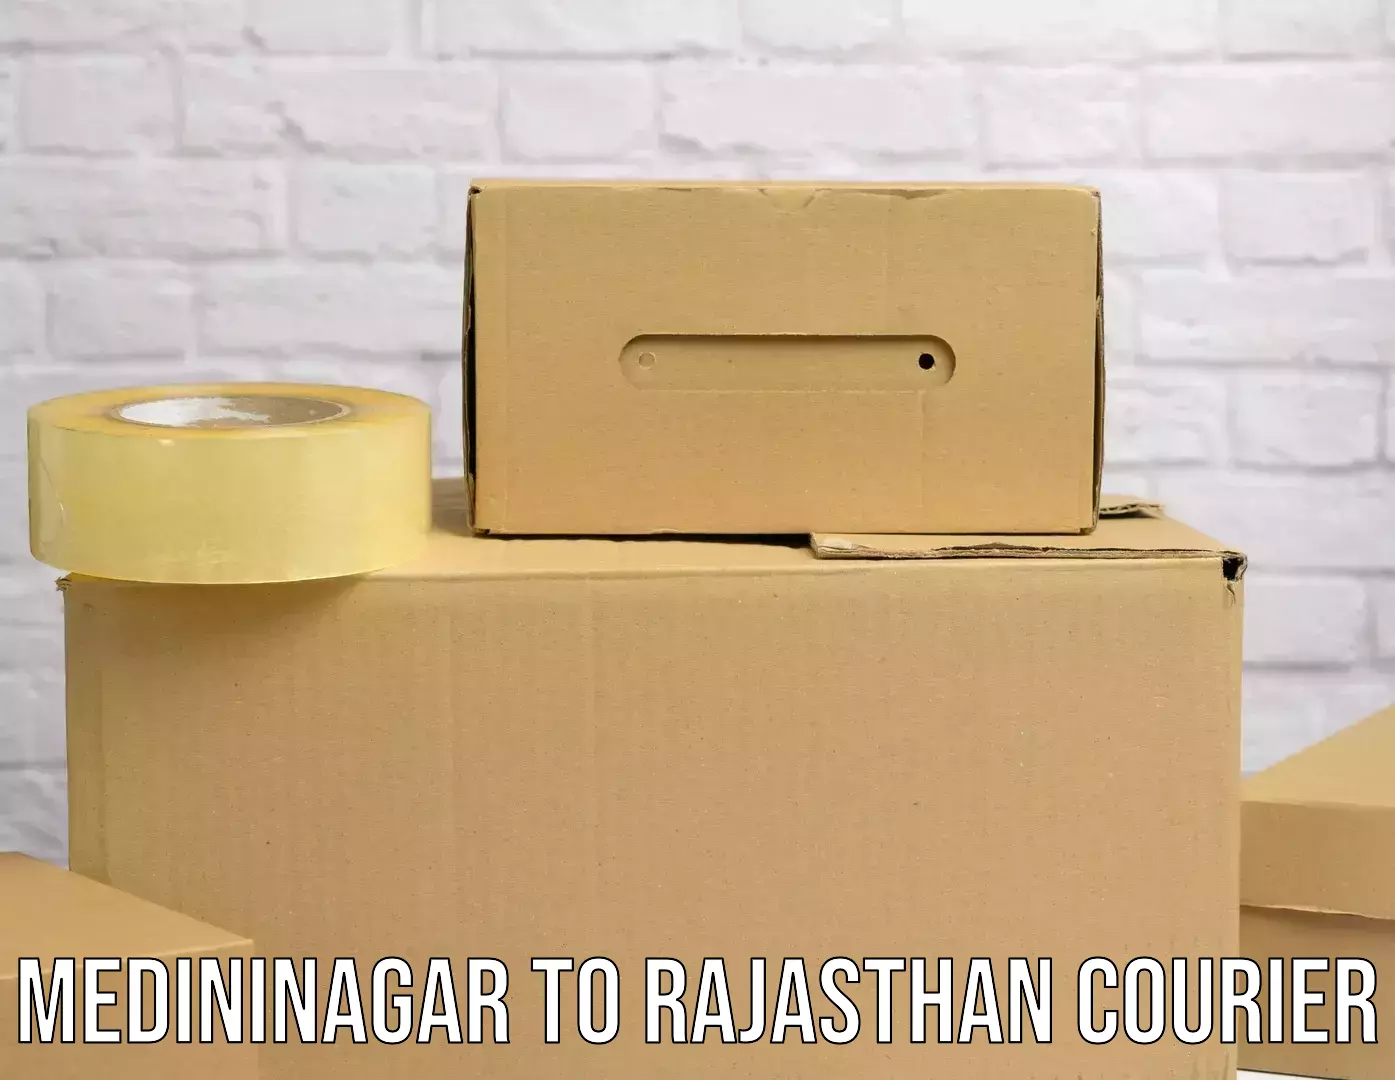 Professional courier services Medininagar to Pratapgarh Rajasthan